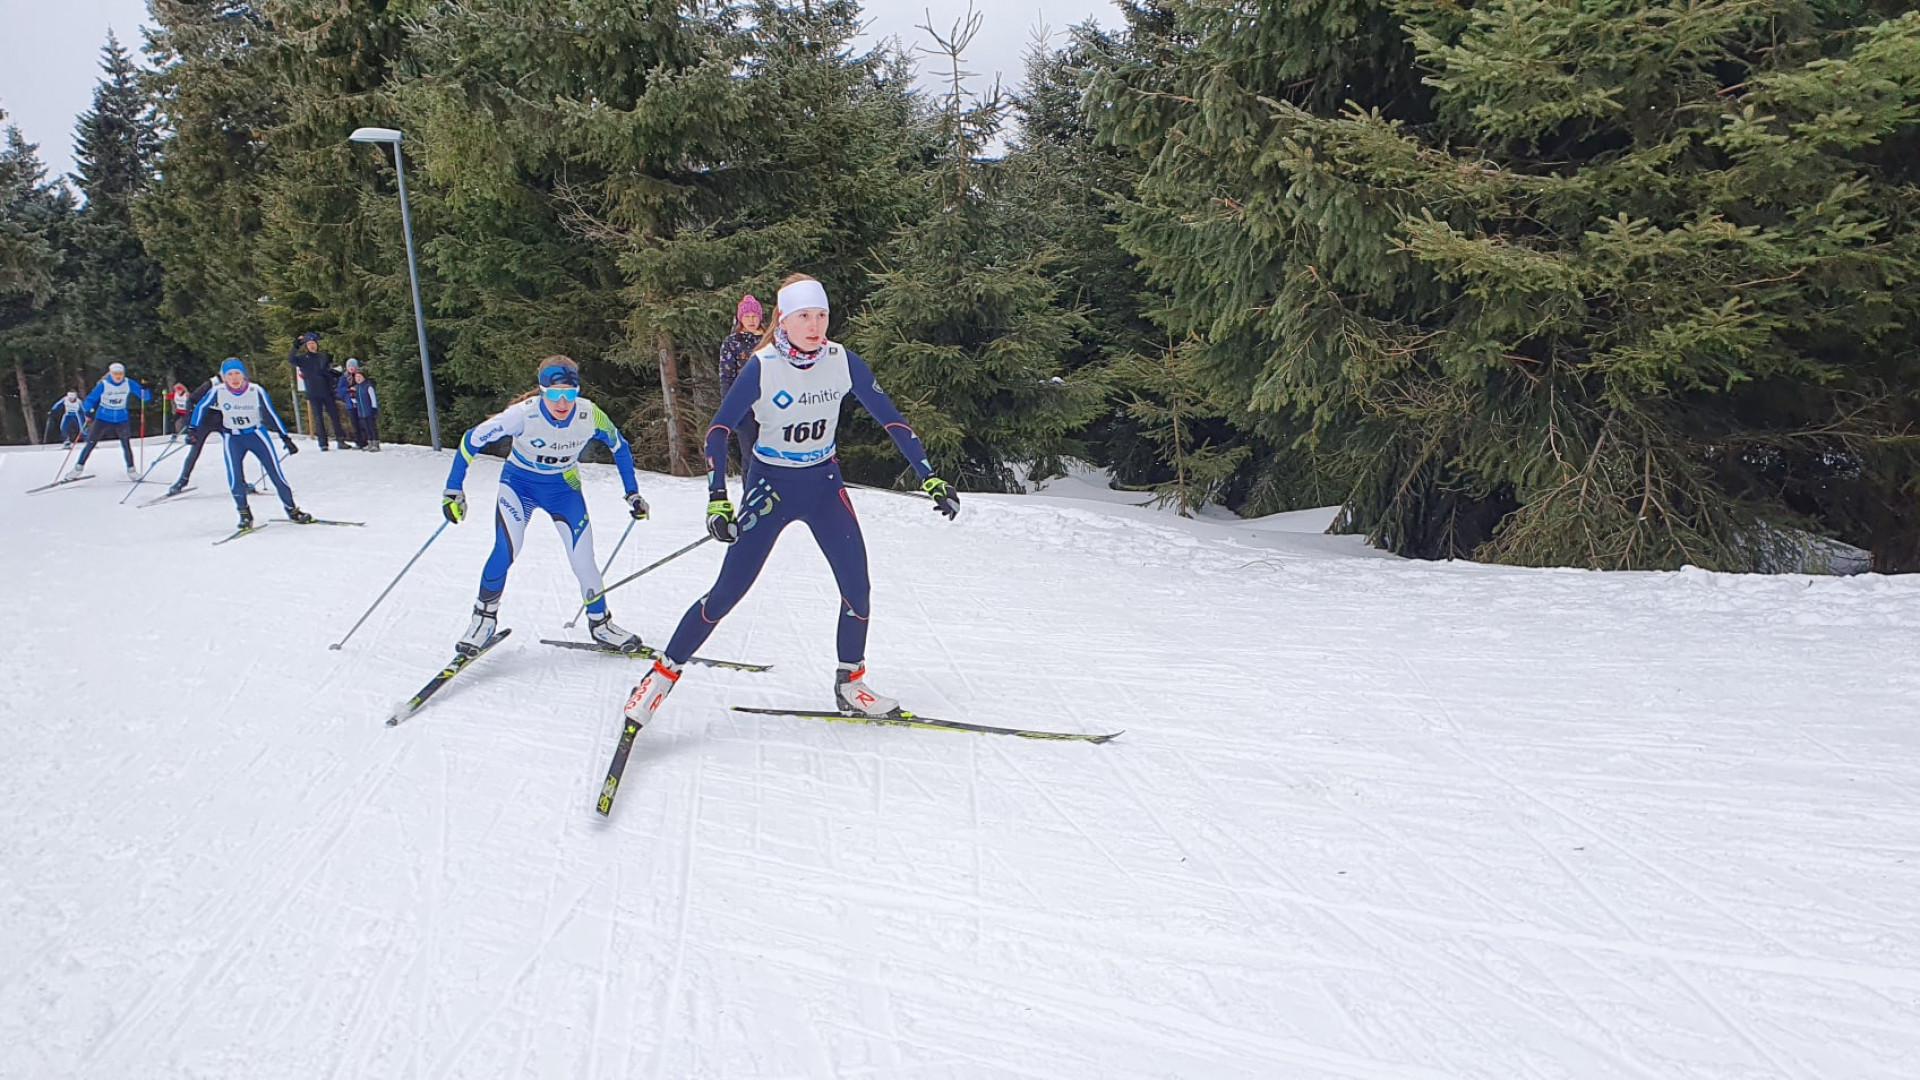 Marie Makosch (vorn laufend), die wie Leonie im Landeskader 1 des Deutschen Skiverbandes läuft, erzielt Platz 3 in der U14 über 5km.